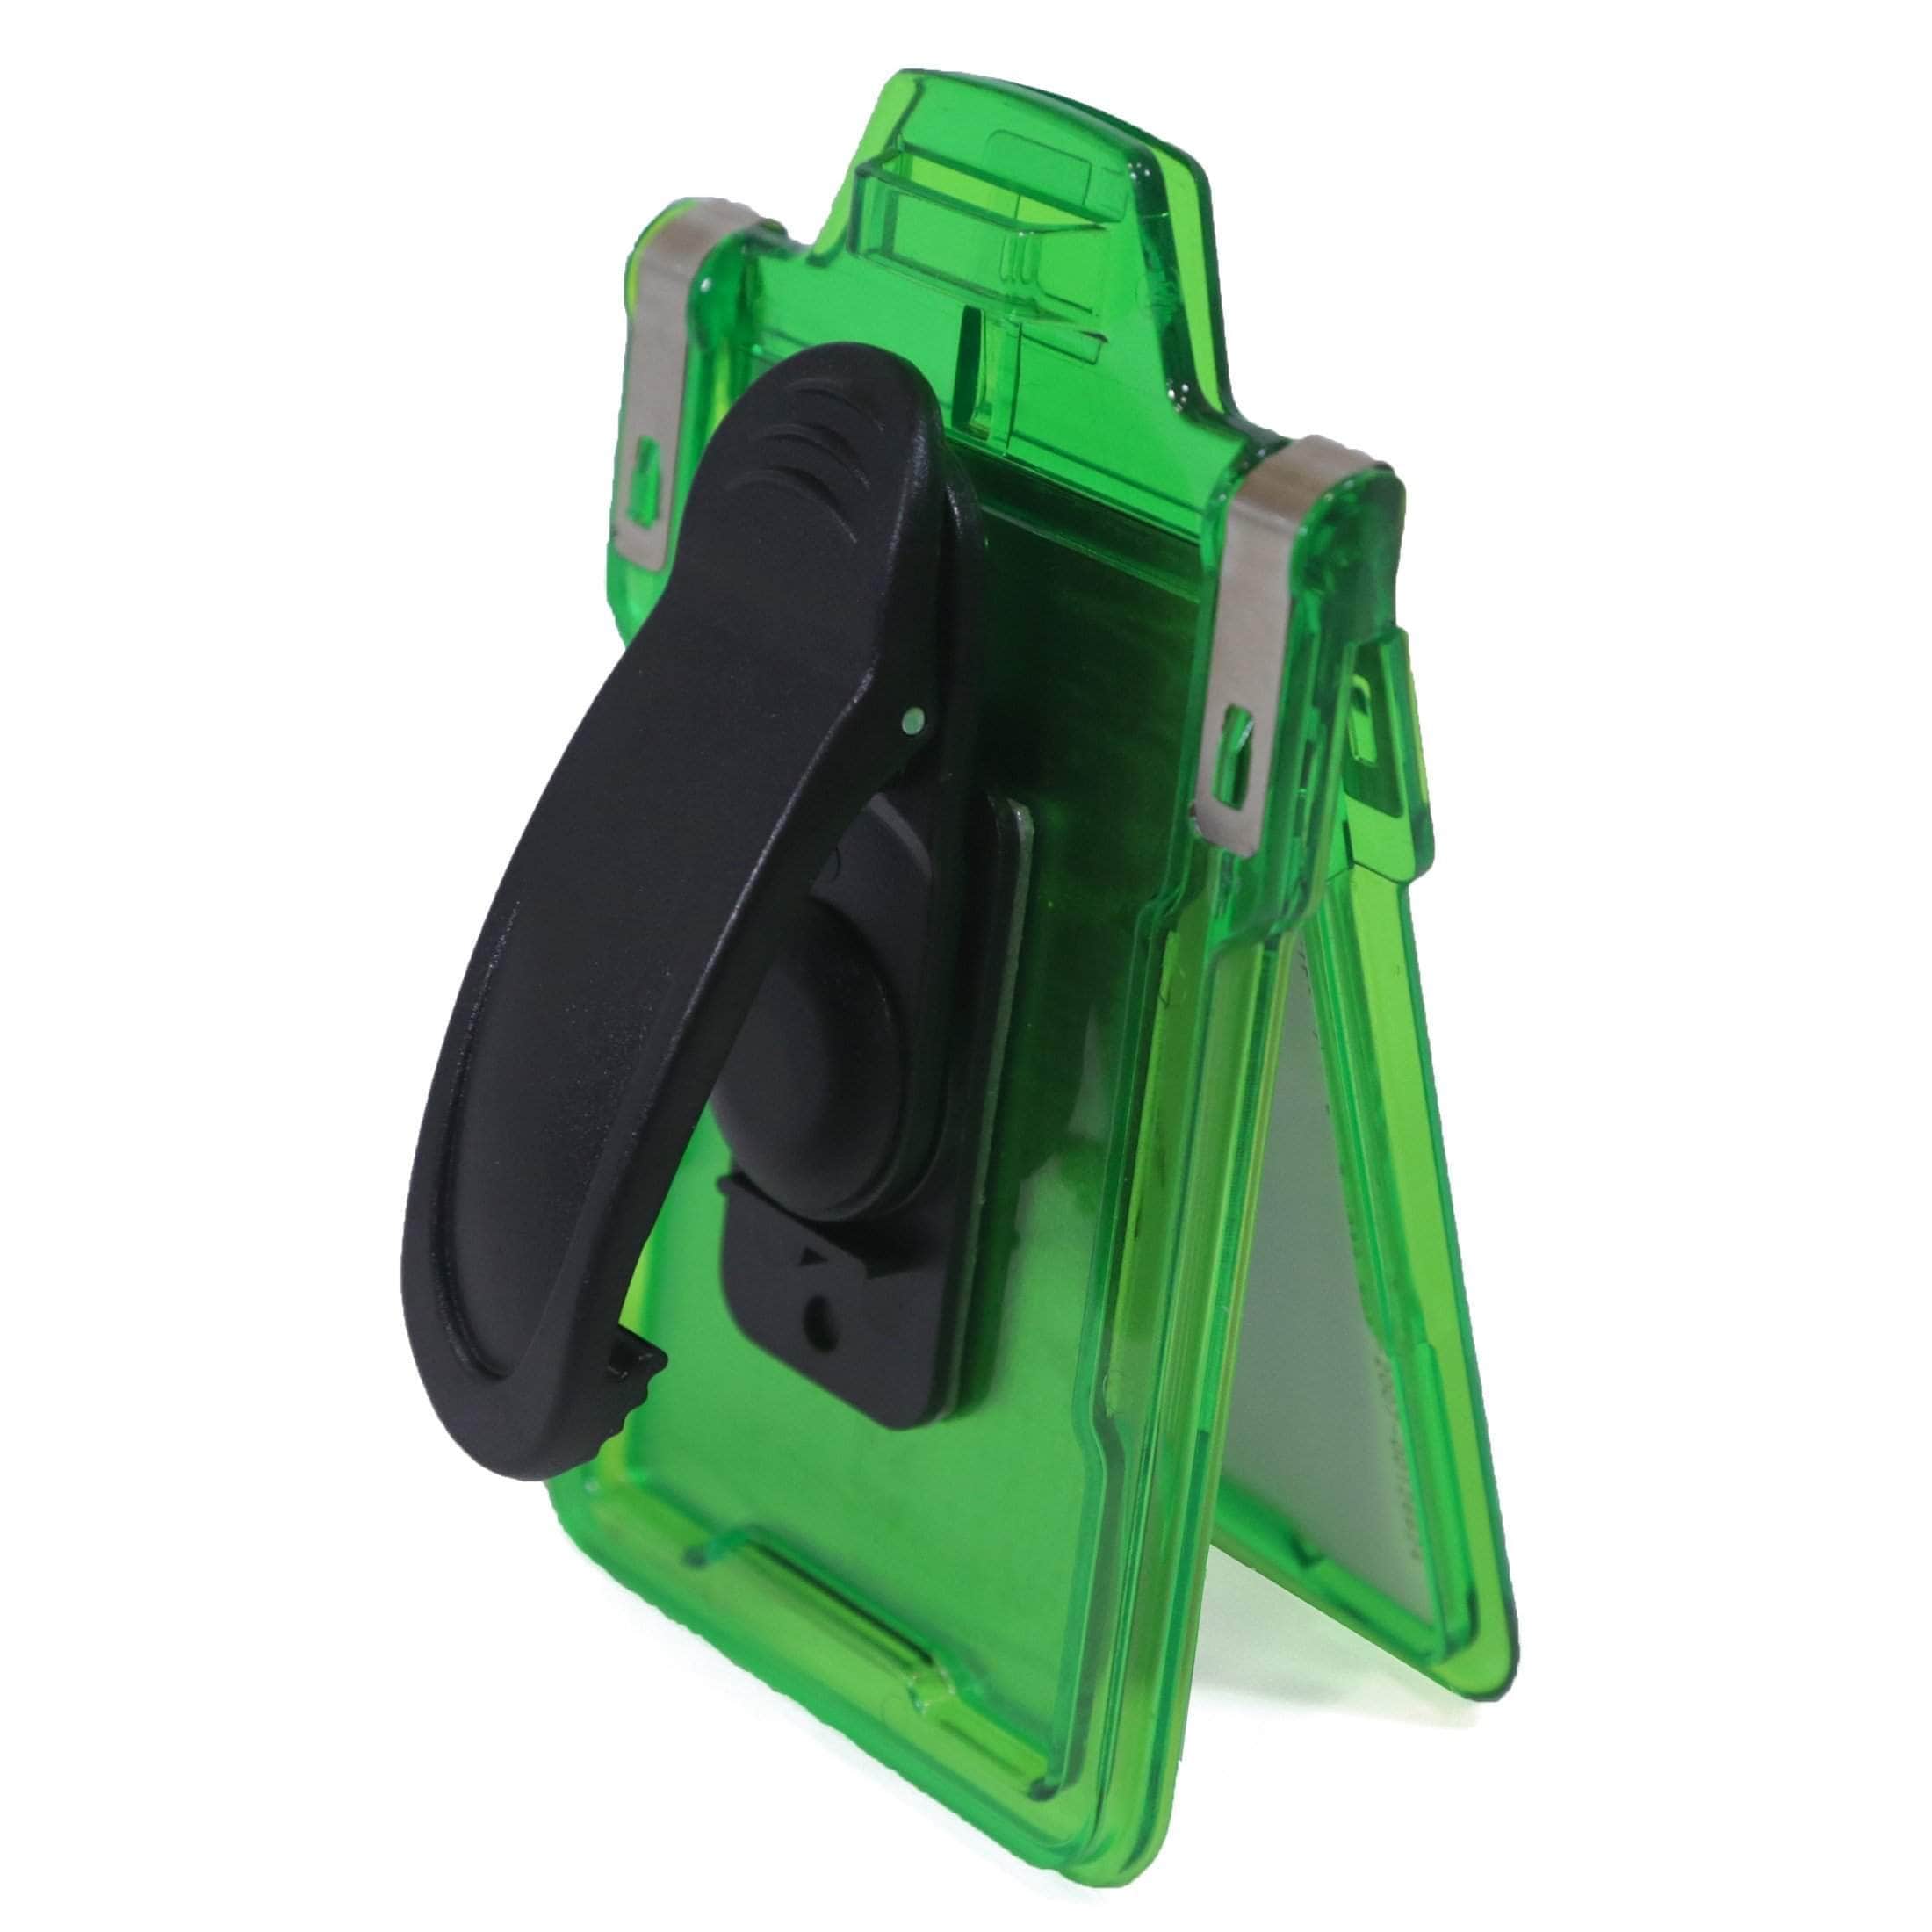 ID Stronghold Badgeholder Green Secure Badge Holder Classic Vertical 1 Card Holder With Belt Clip